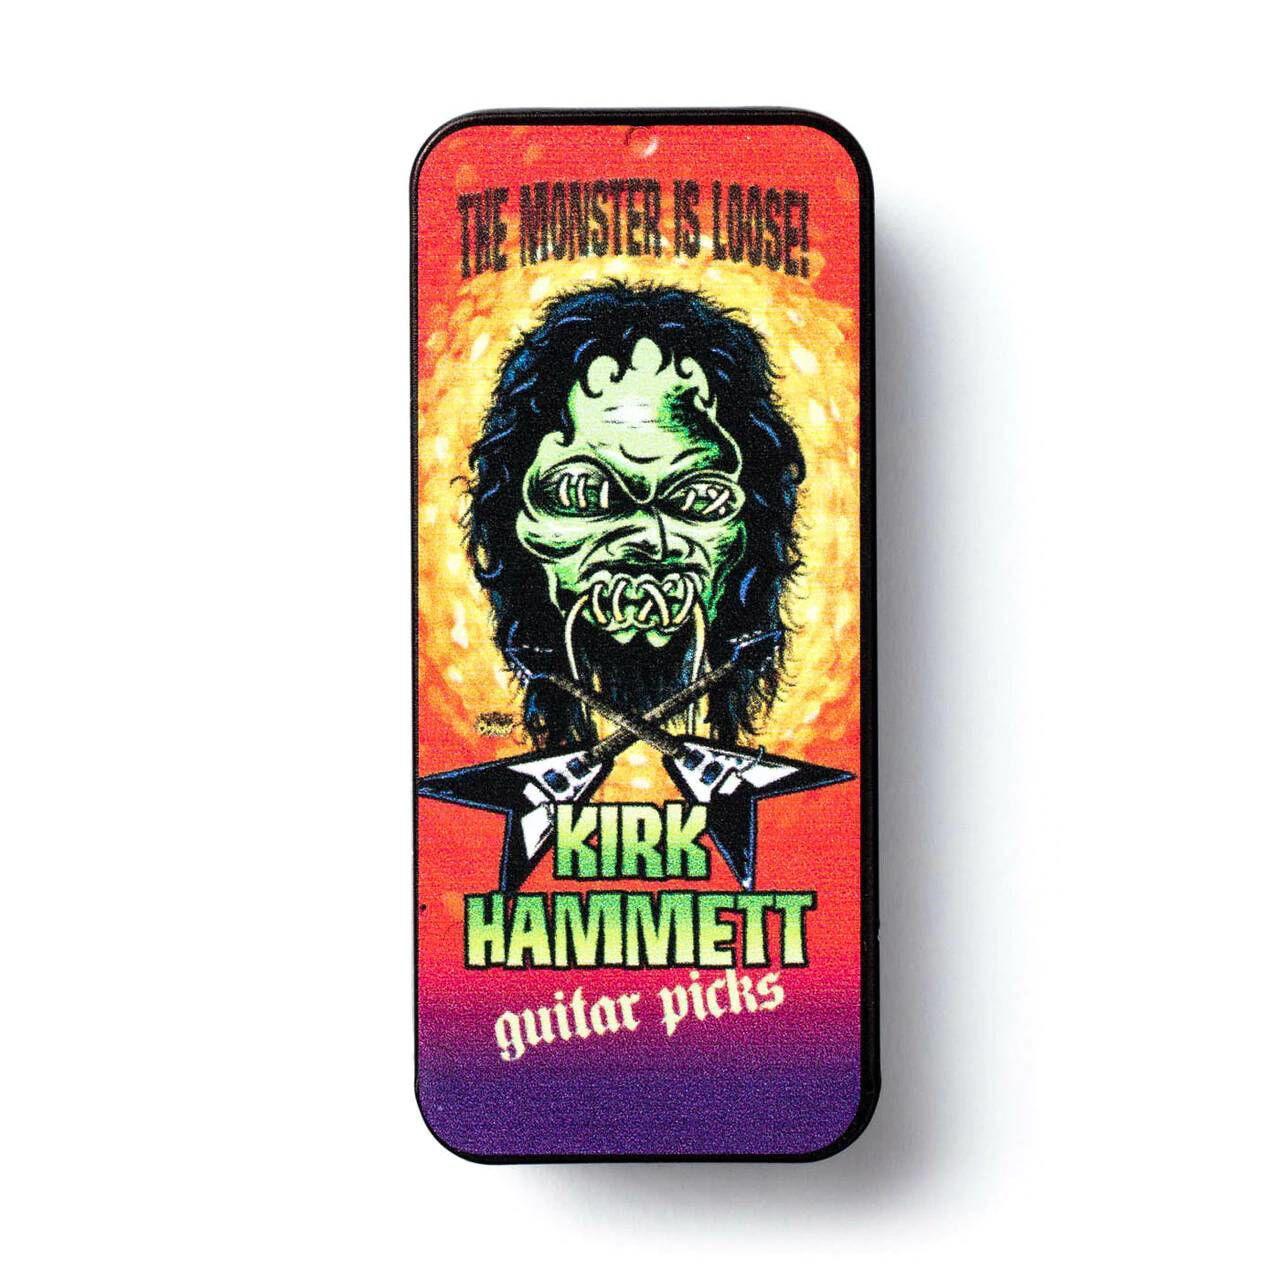 Kirk Hammett Signature Pick Tin W/Personal Touri - Guitars - Picks by Jim Dunlop at Muso's Stuff